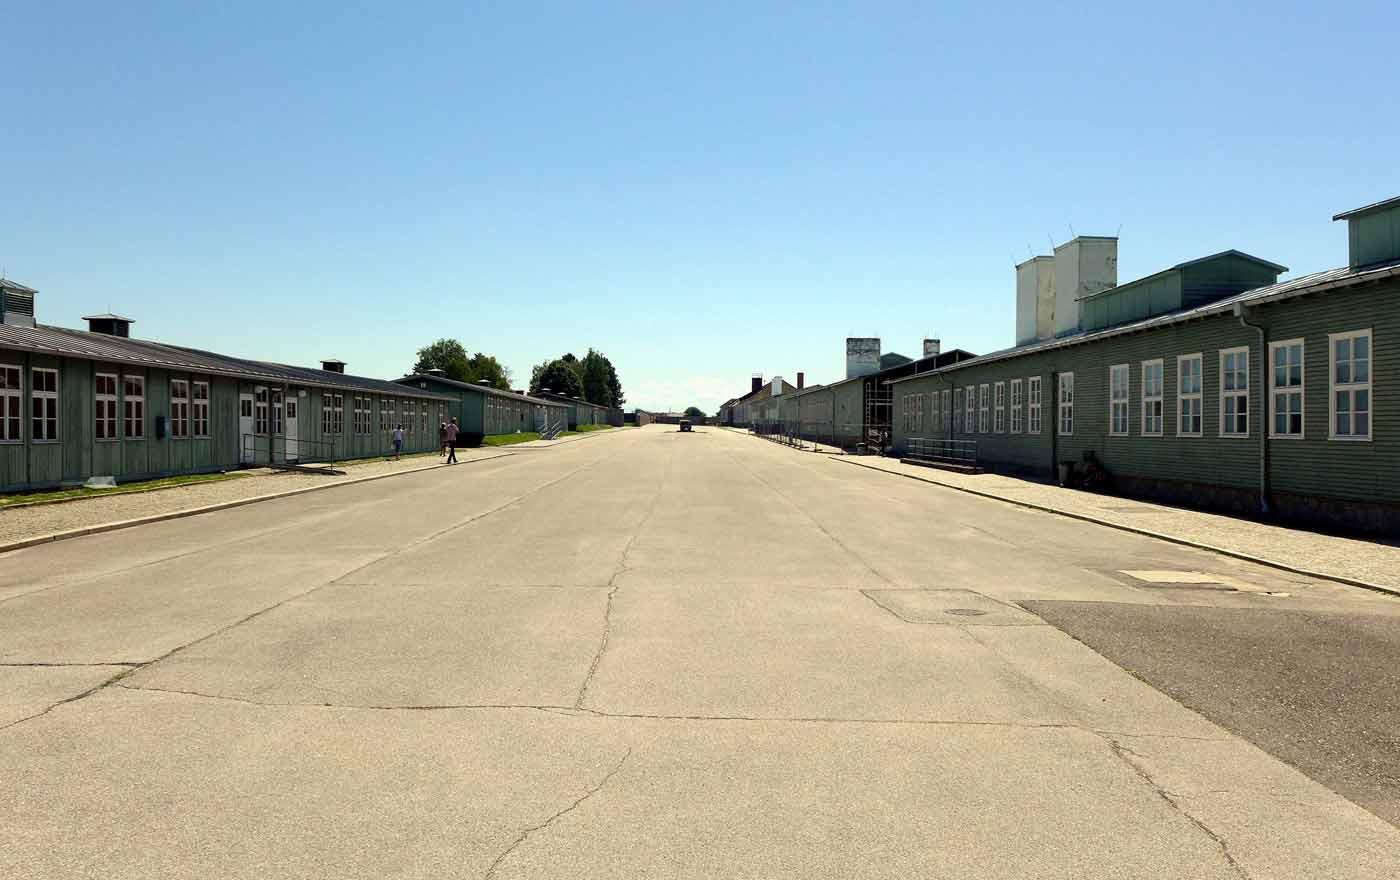 Die KZ-Gedenkstätte Mauthausen muss vorerst leer bleiben, die Gedenkfeiern zur Befreiung vor 75 Jahren wurden ins Web verlegt. Foto: wikimedia/Dnalor 01/cc by sa 3.0